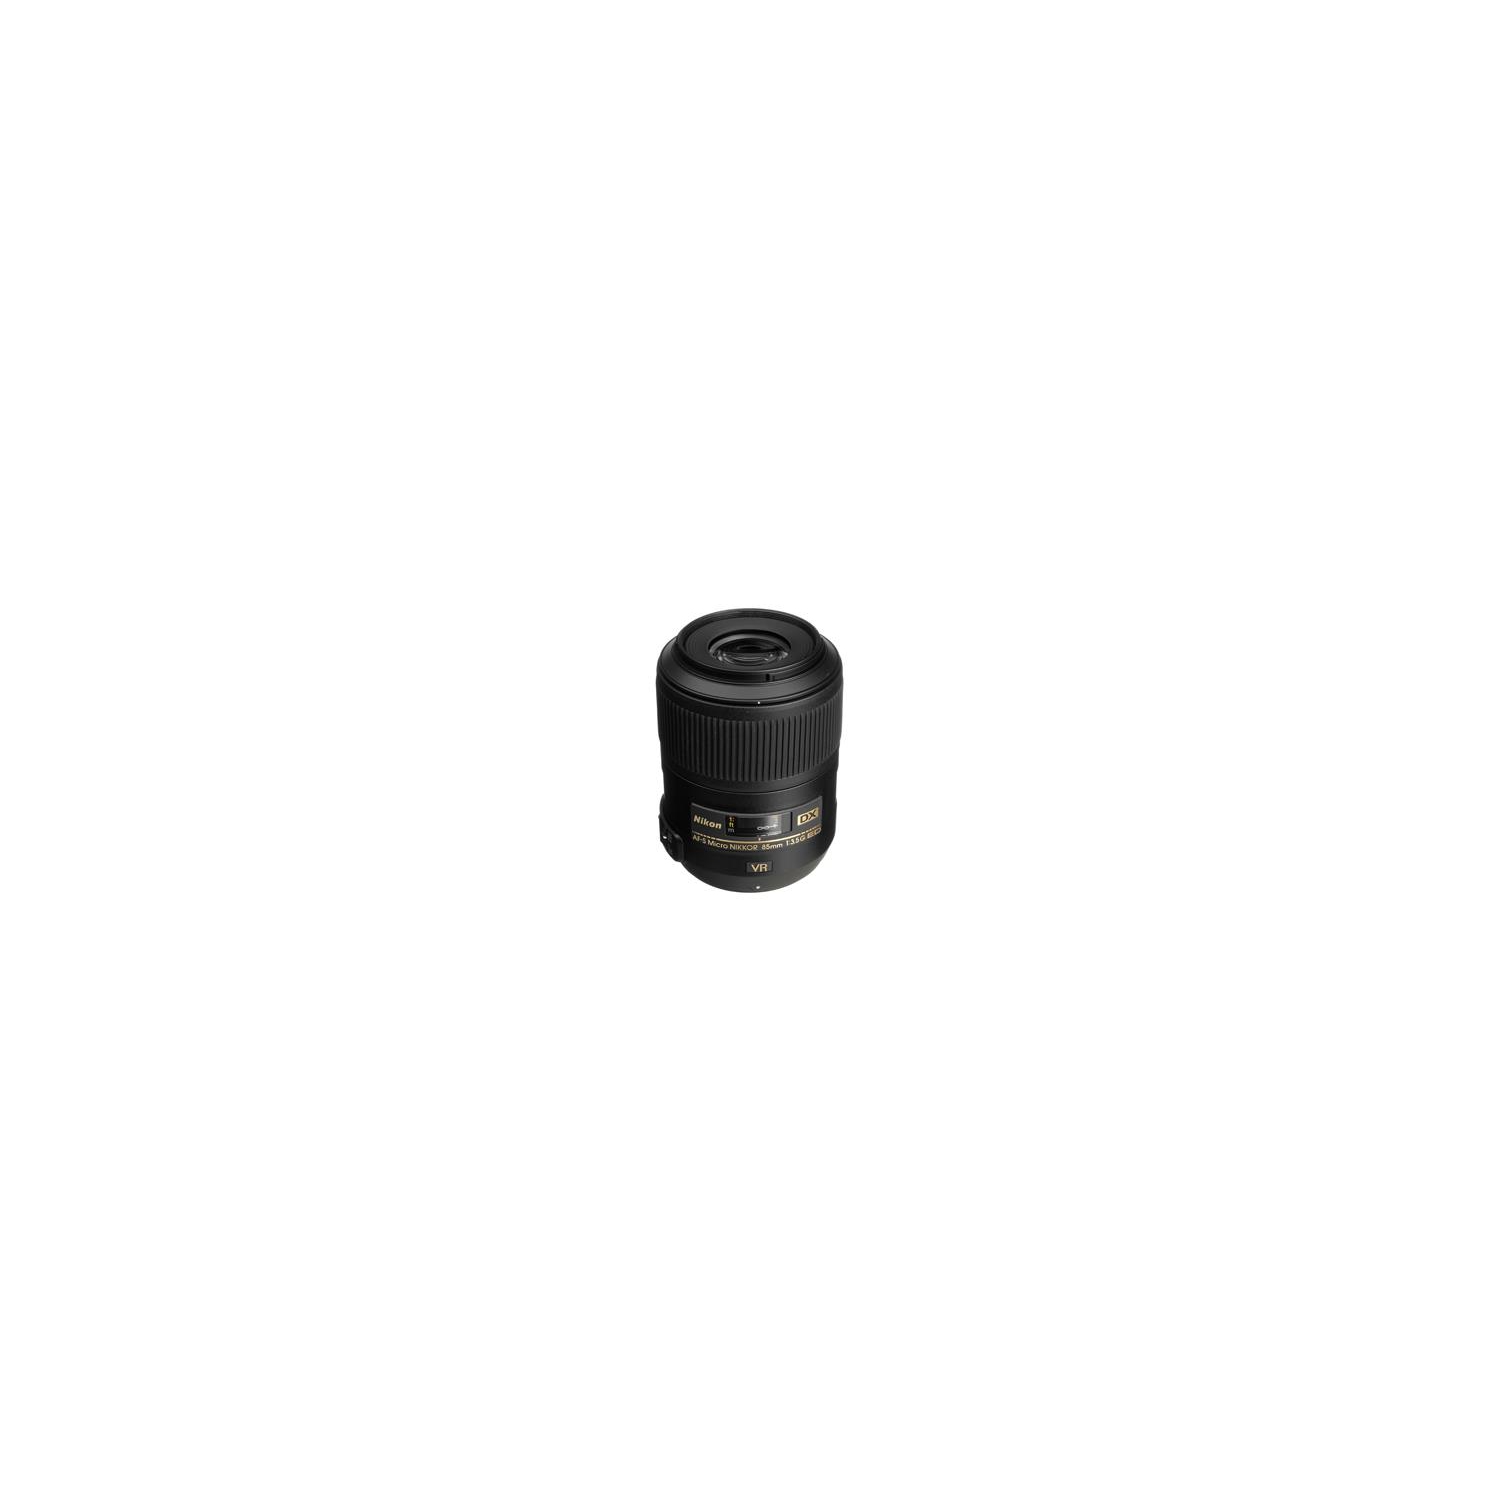 Nikon 85mm f3.5 G VR AF-S DX Micro Lens